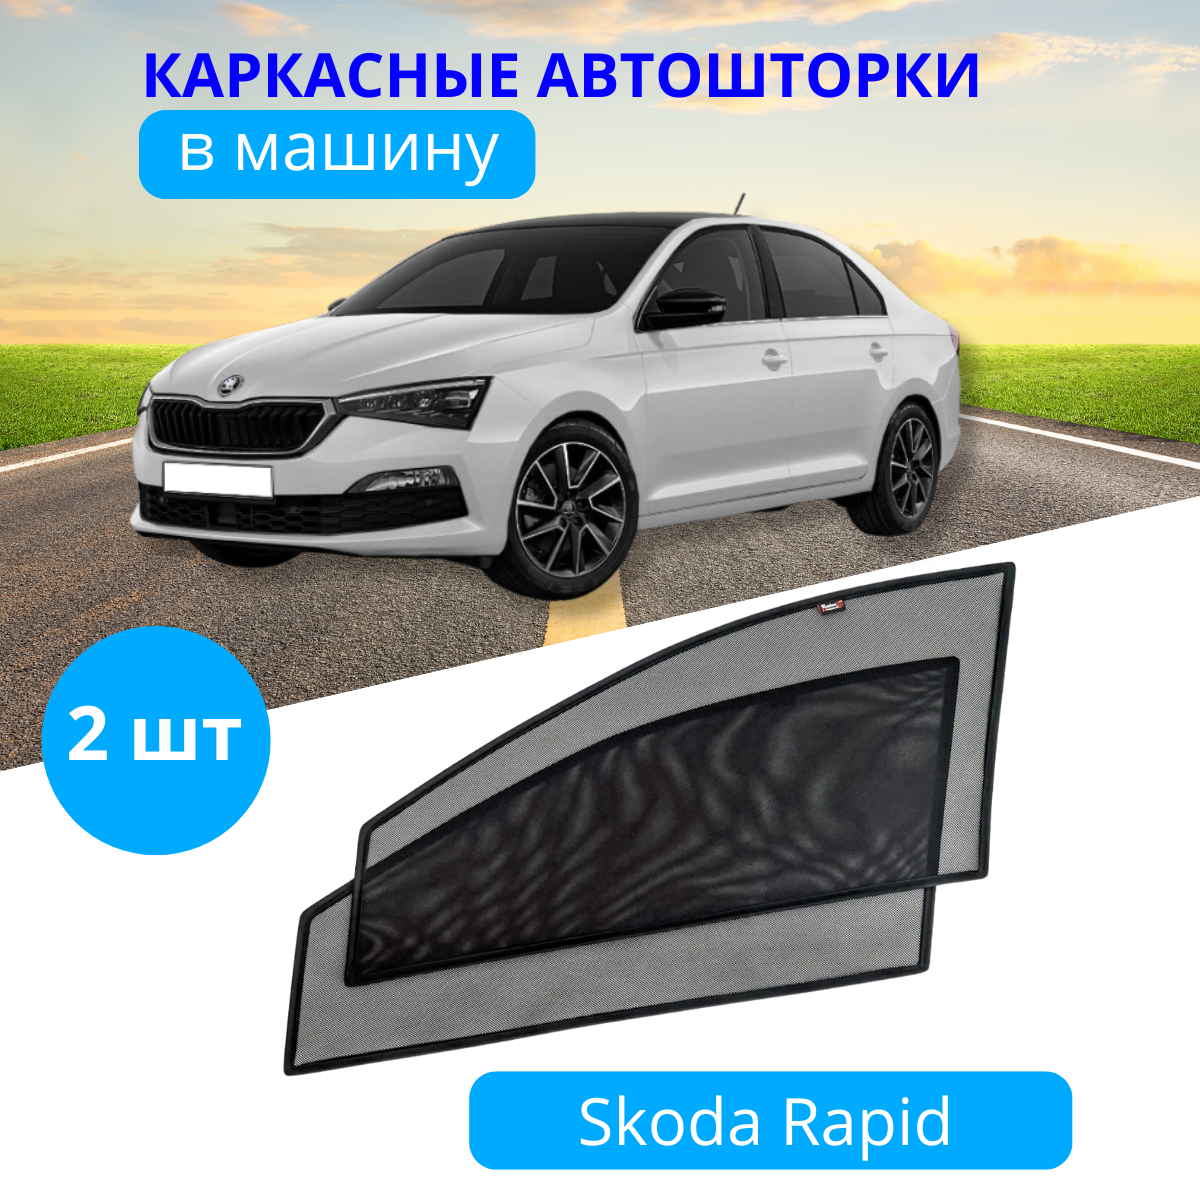 Автошторки каркасные на SKODA Rapid с 2020, на передние двери на встроенных магнитах, с затемнением 80-85% от автоателье "Тачкин Гардероб".